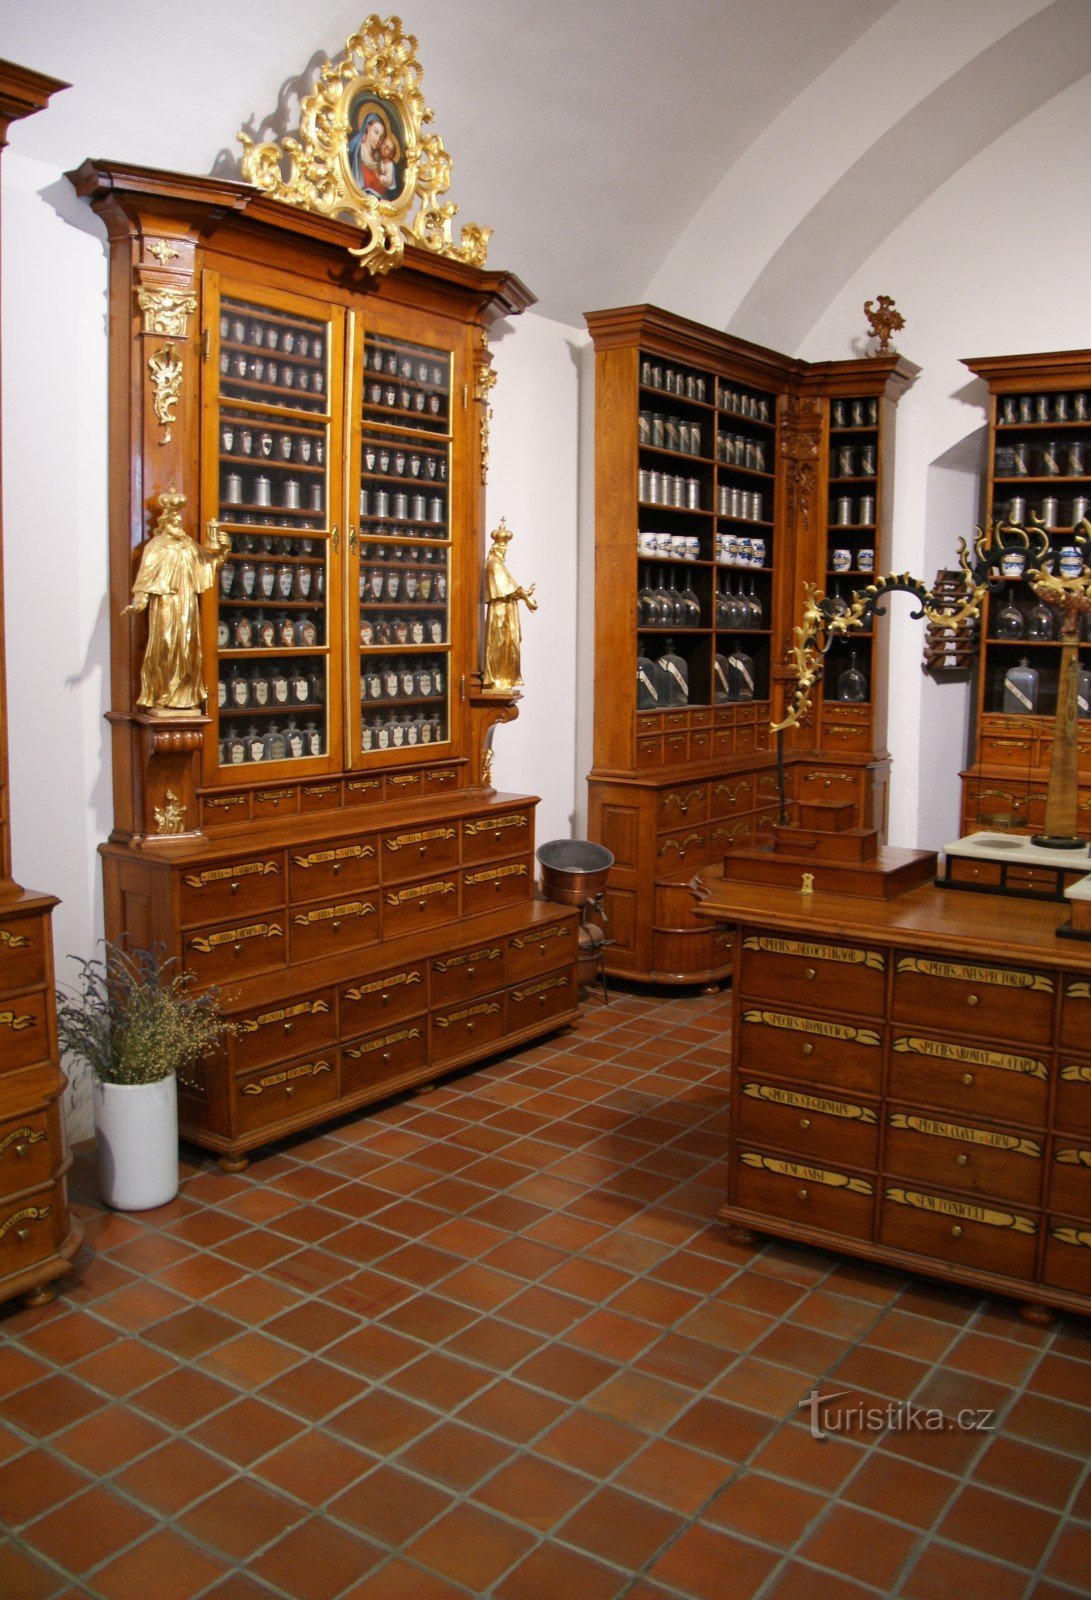 Brno (Špilberk) – farmacia barocca